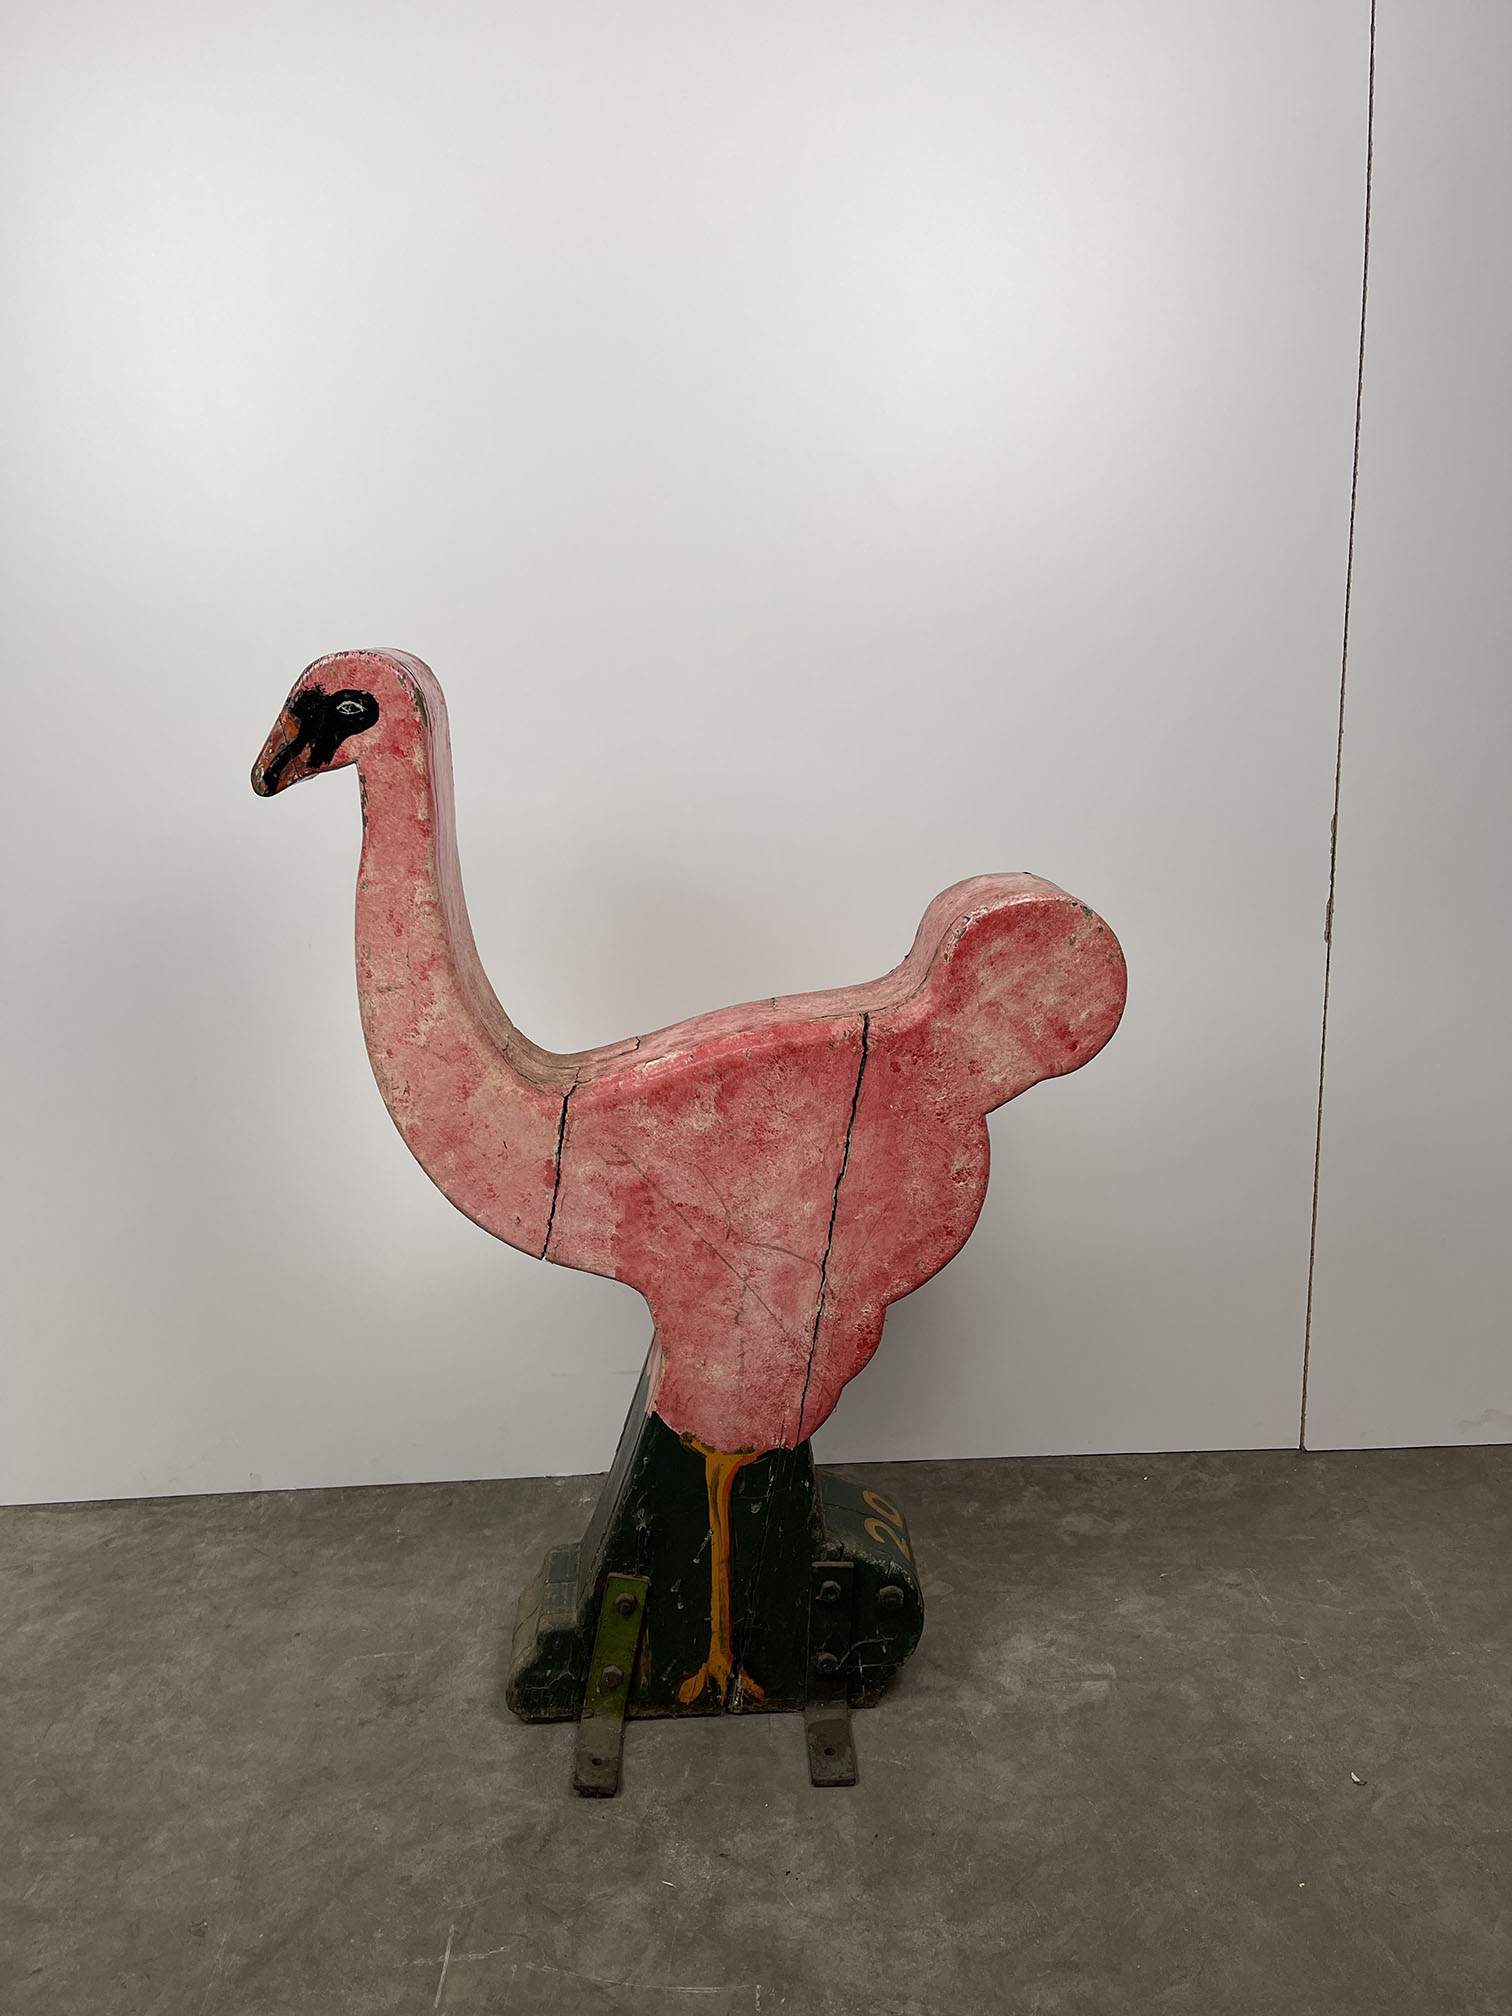 Antique Children's Flamingo Caroulsel Ride - Image 8 of 8